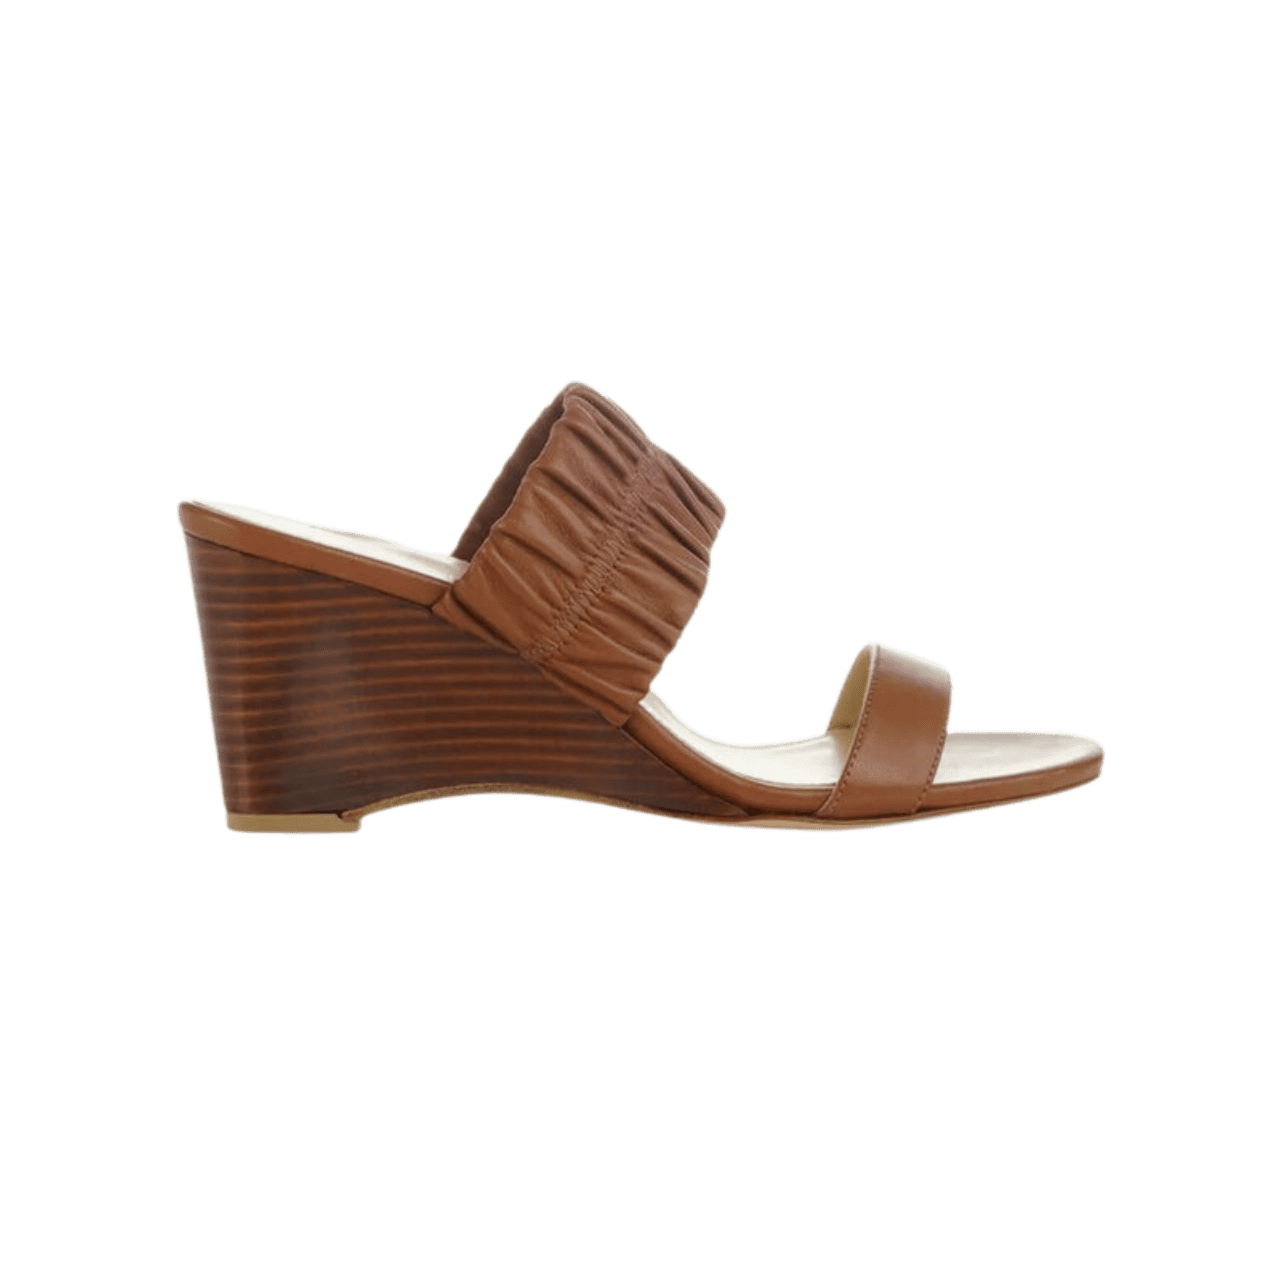 Marion Parke Margo slide wedge sandals